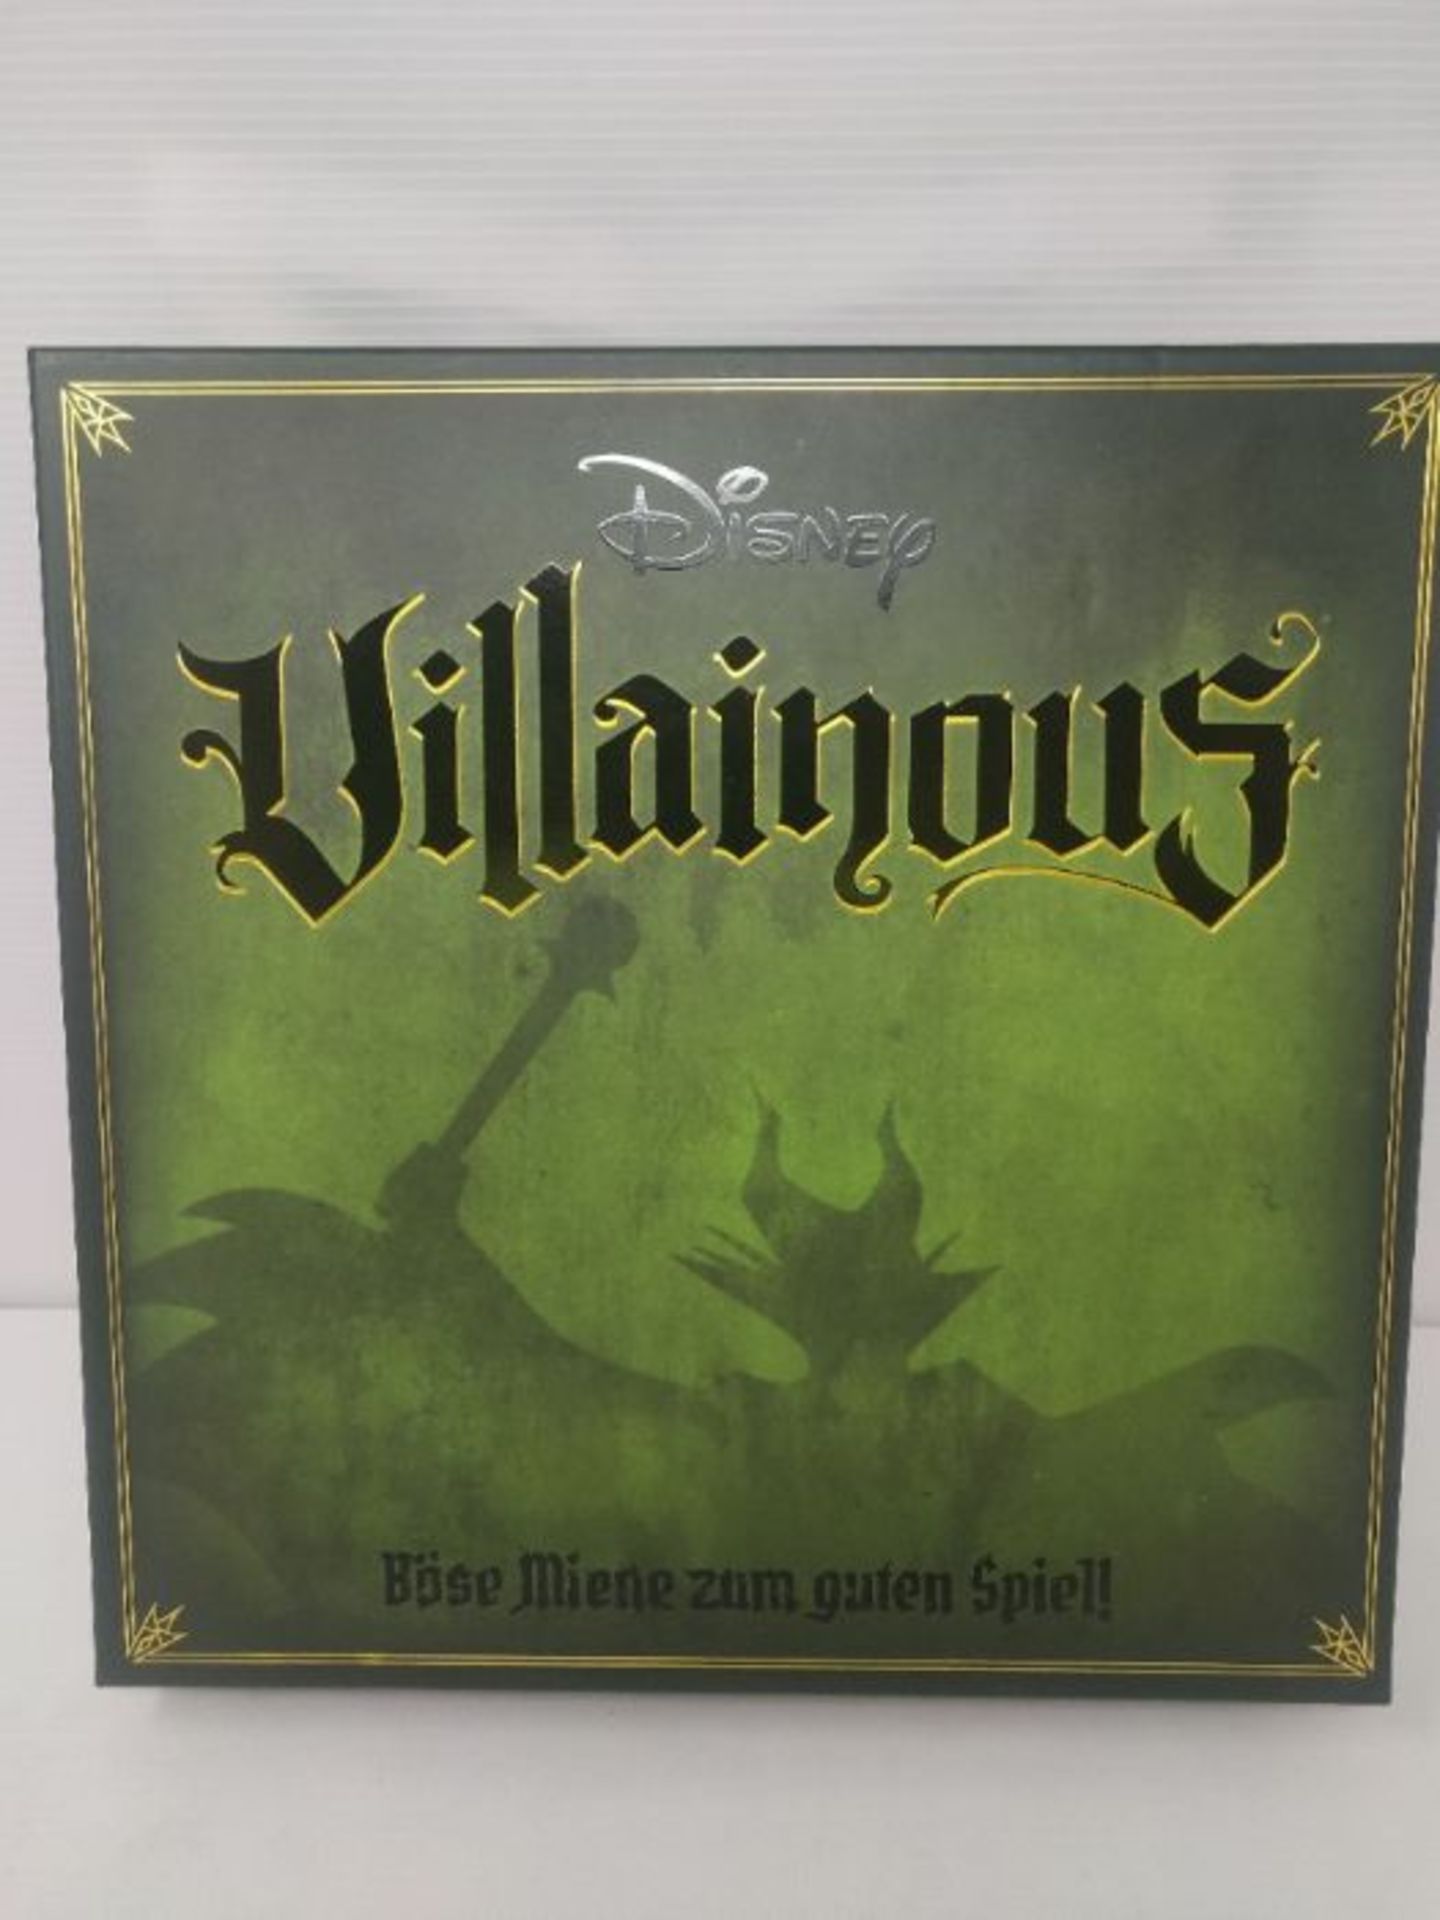 Ravensburger Disney Villainous Game, German Version - Image 3 of 3